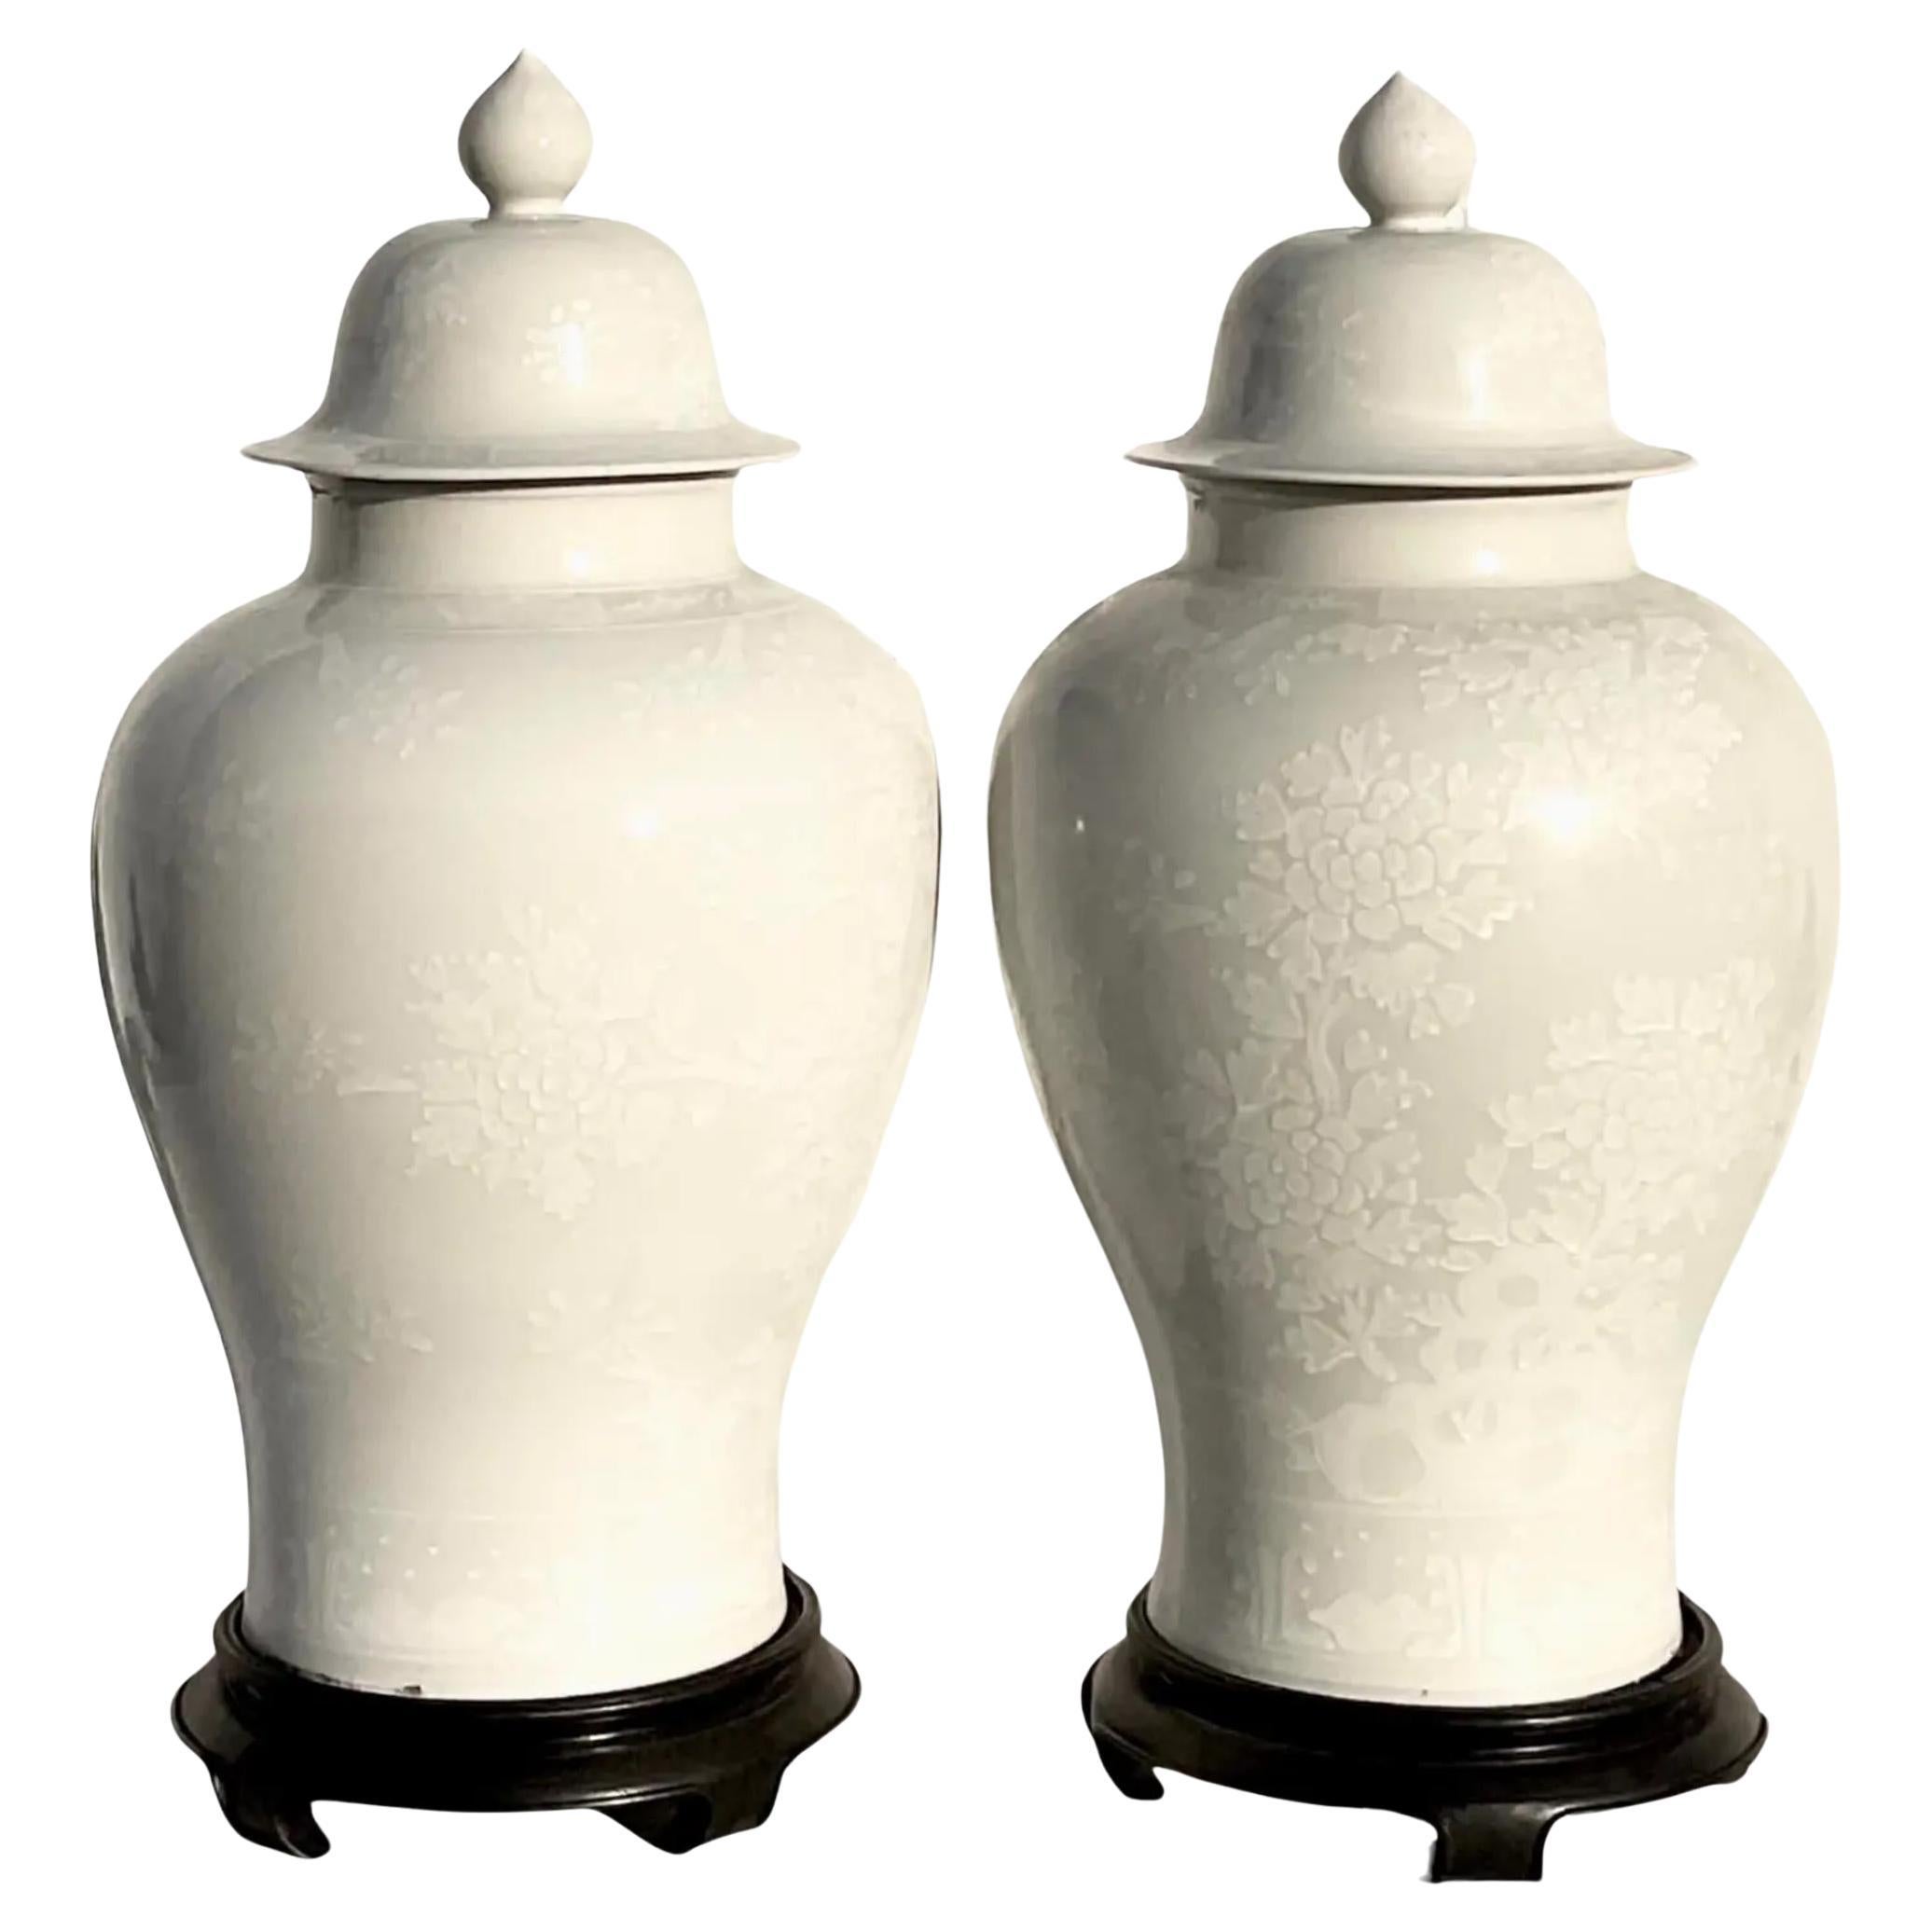 Vintage Asian Floral Ingwer Jar Urnen - ein Paar